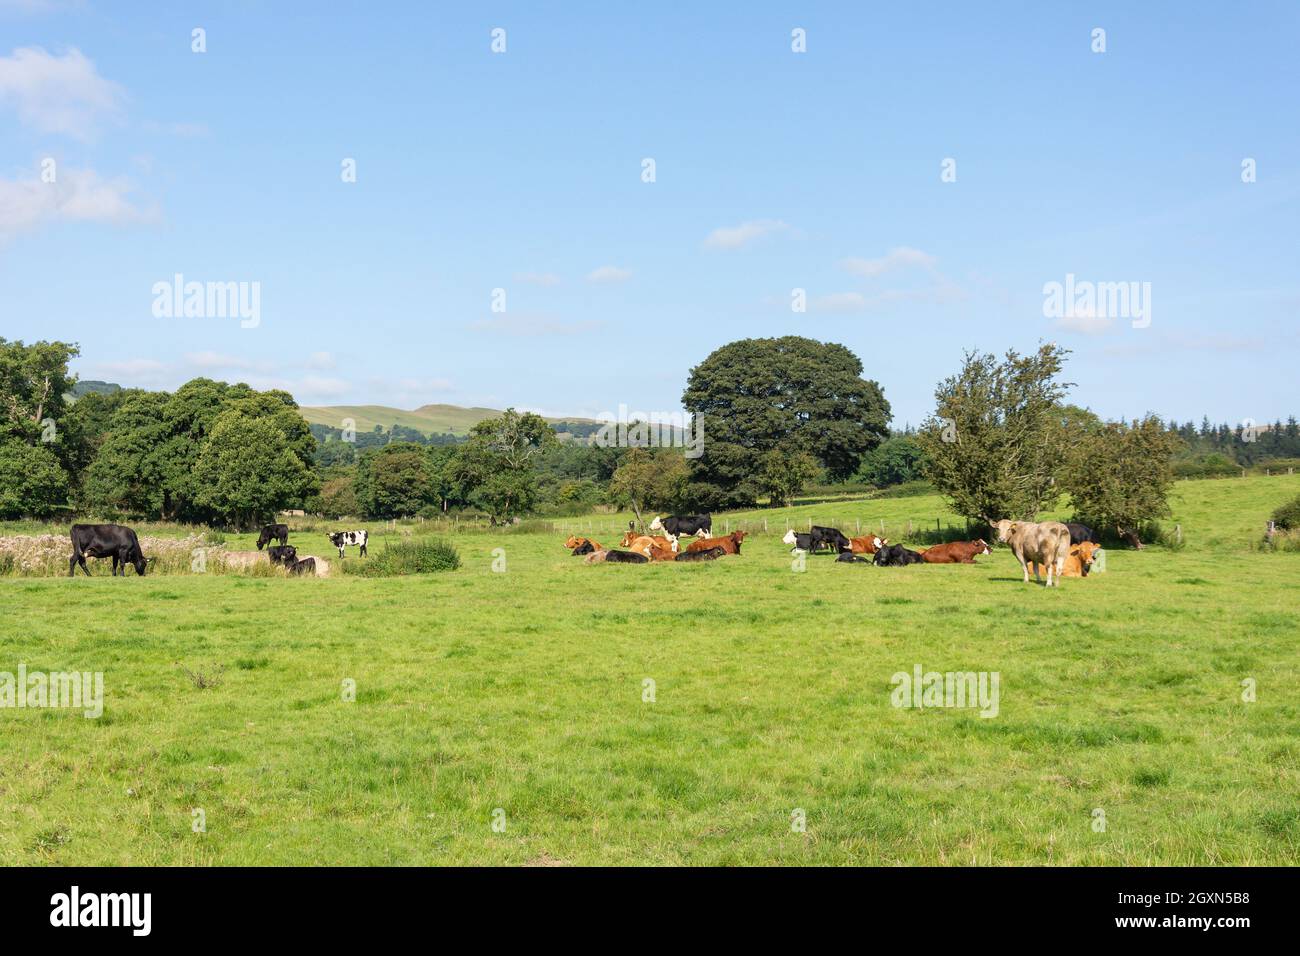 Cattle in field, Vale of Clwyd, Denbighshire (Sir Ddinbych), Wales, United Kingdom Stock Photo